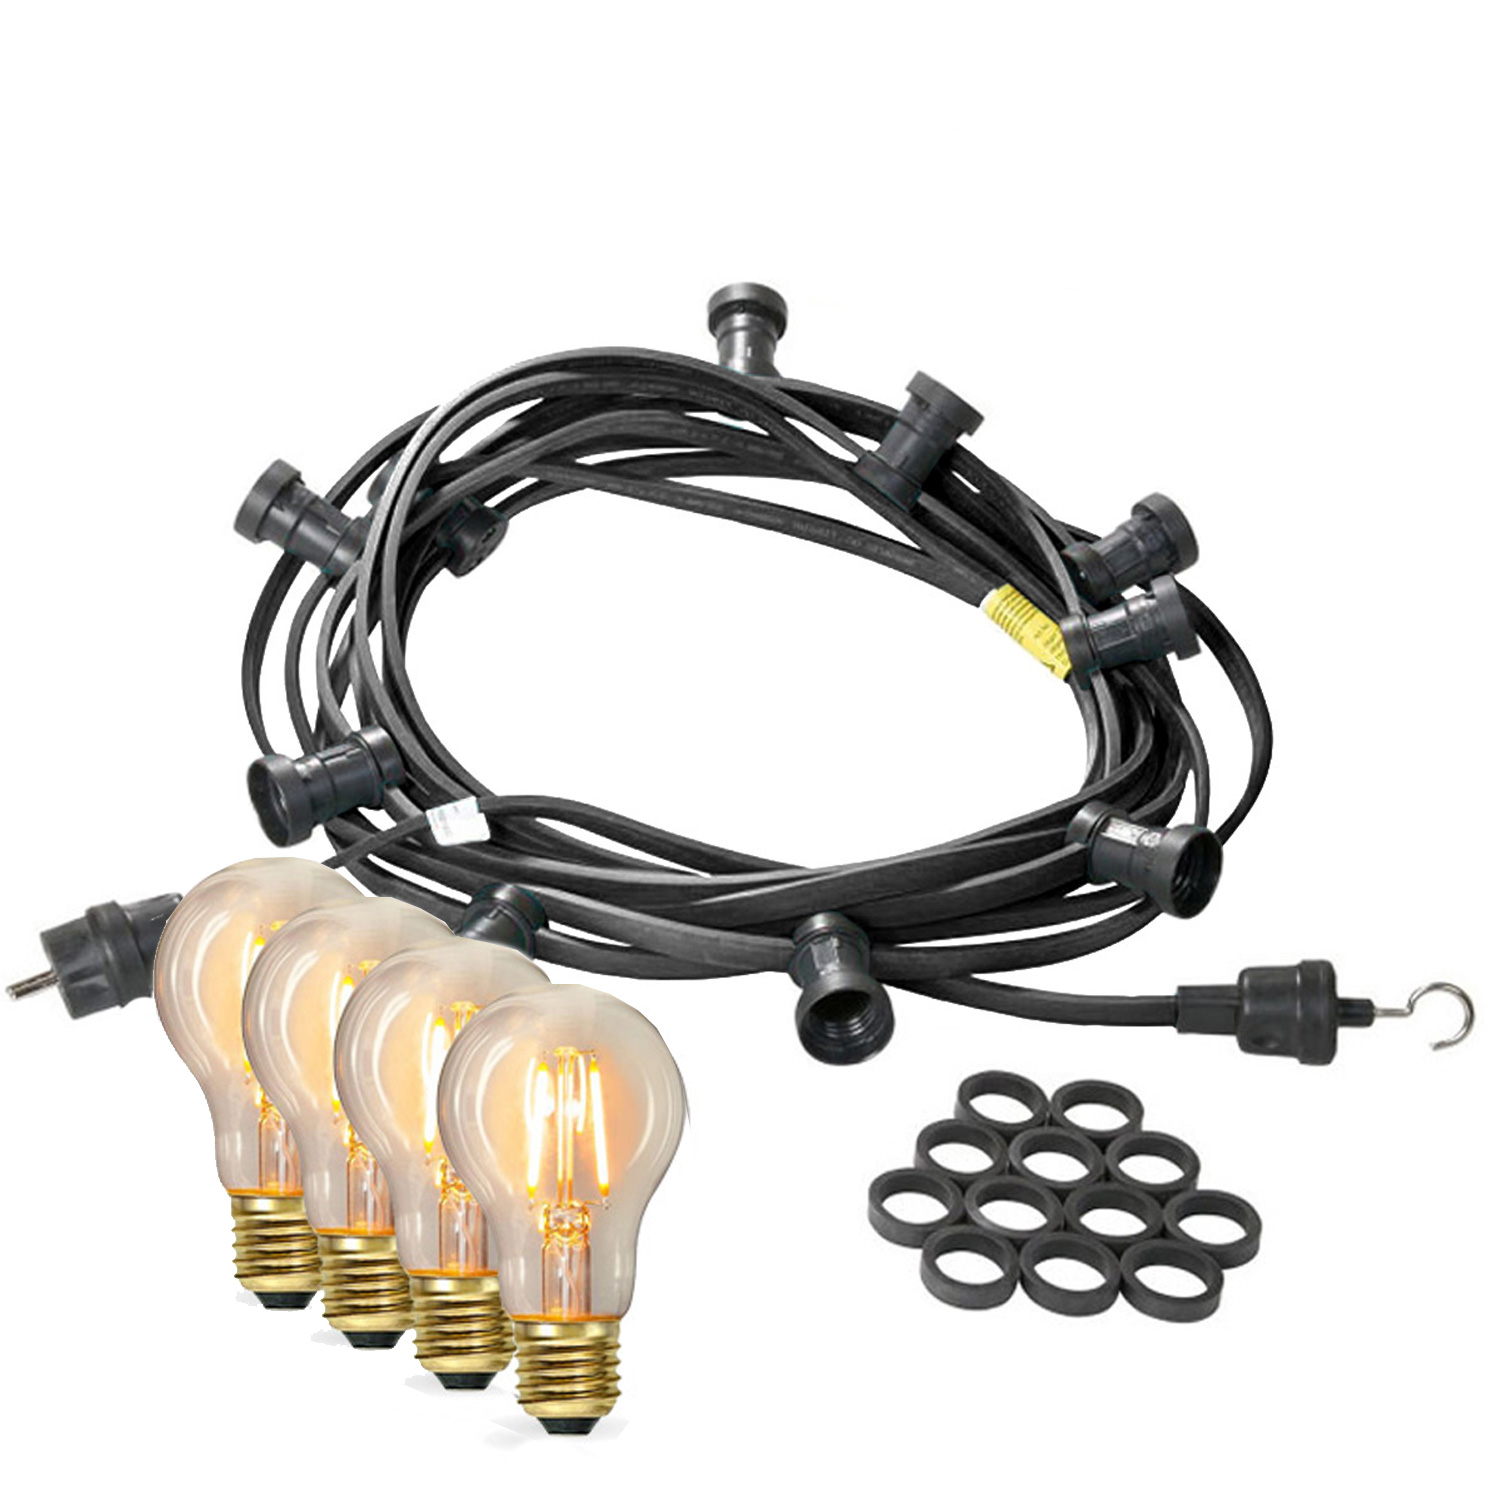 Illu-/Partylichterkette 10m - Außenlichterkette - Made in Germany - 10 x Edison LED Filamentlampen